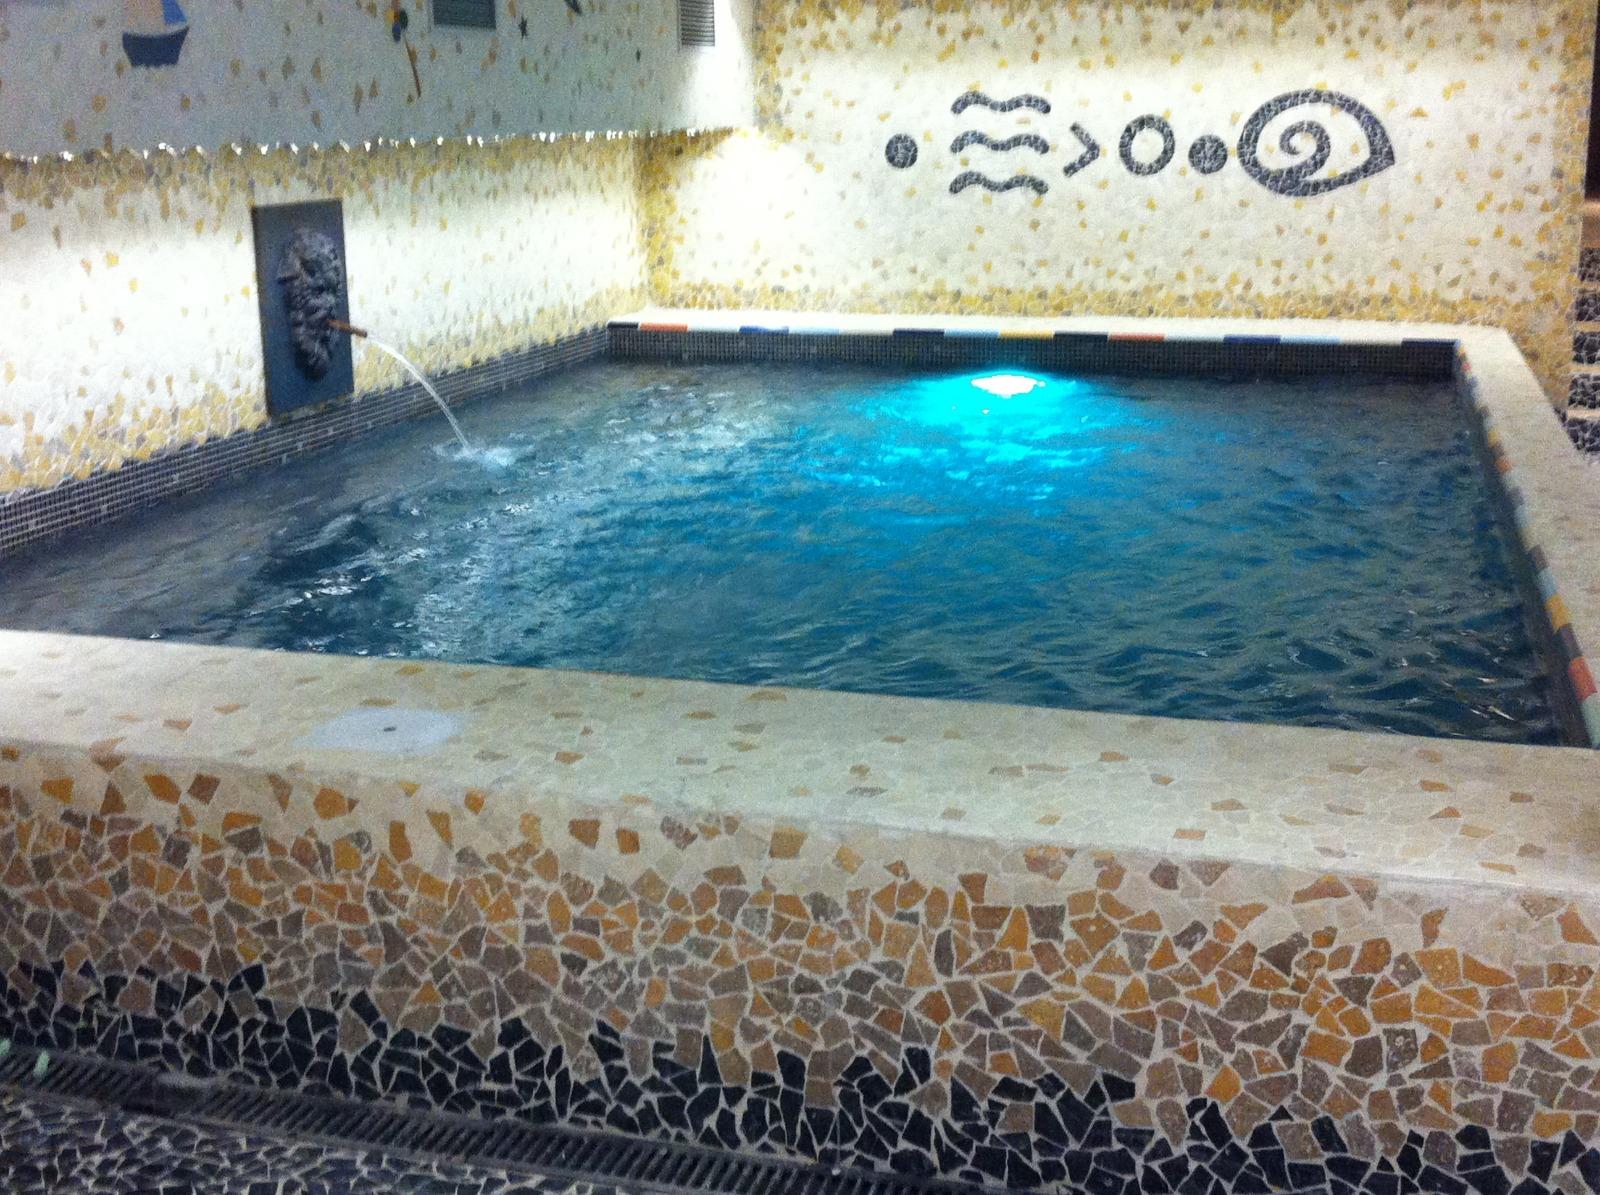 Réalisation d'un bassin dans un hôtel particulier parisien.